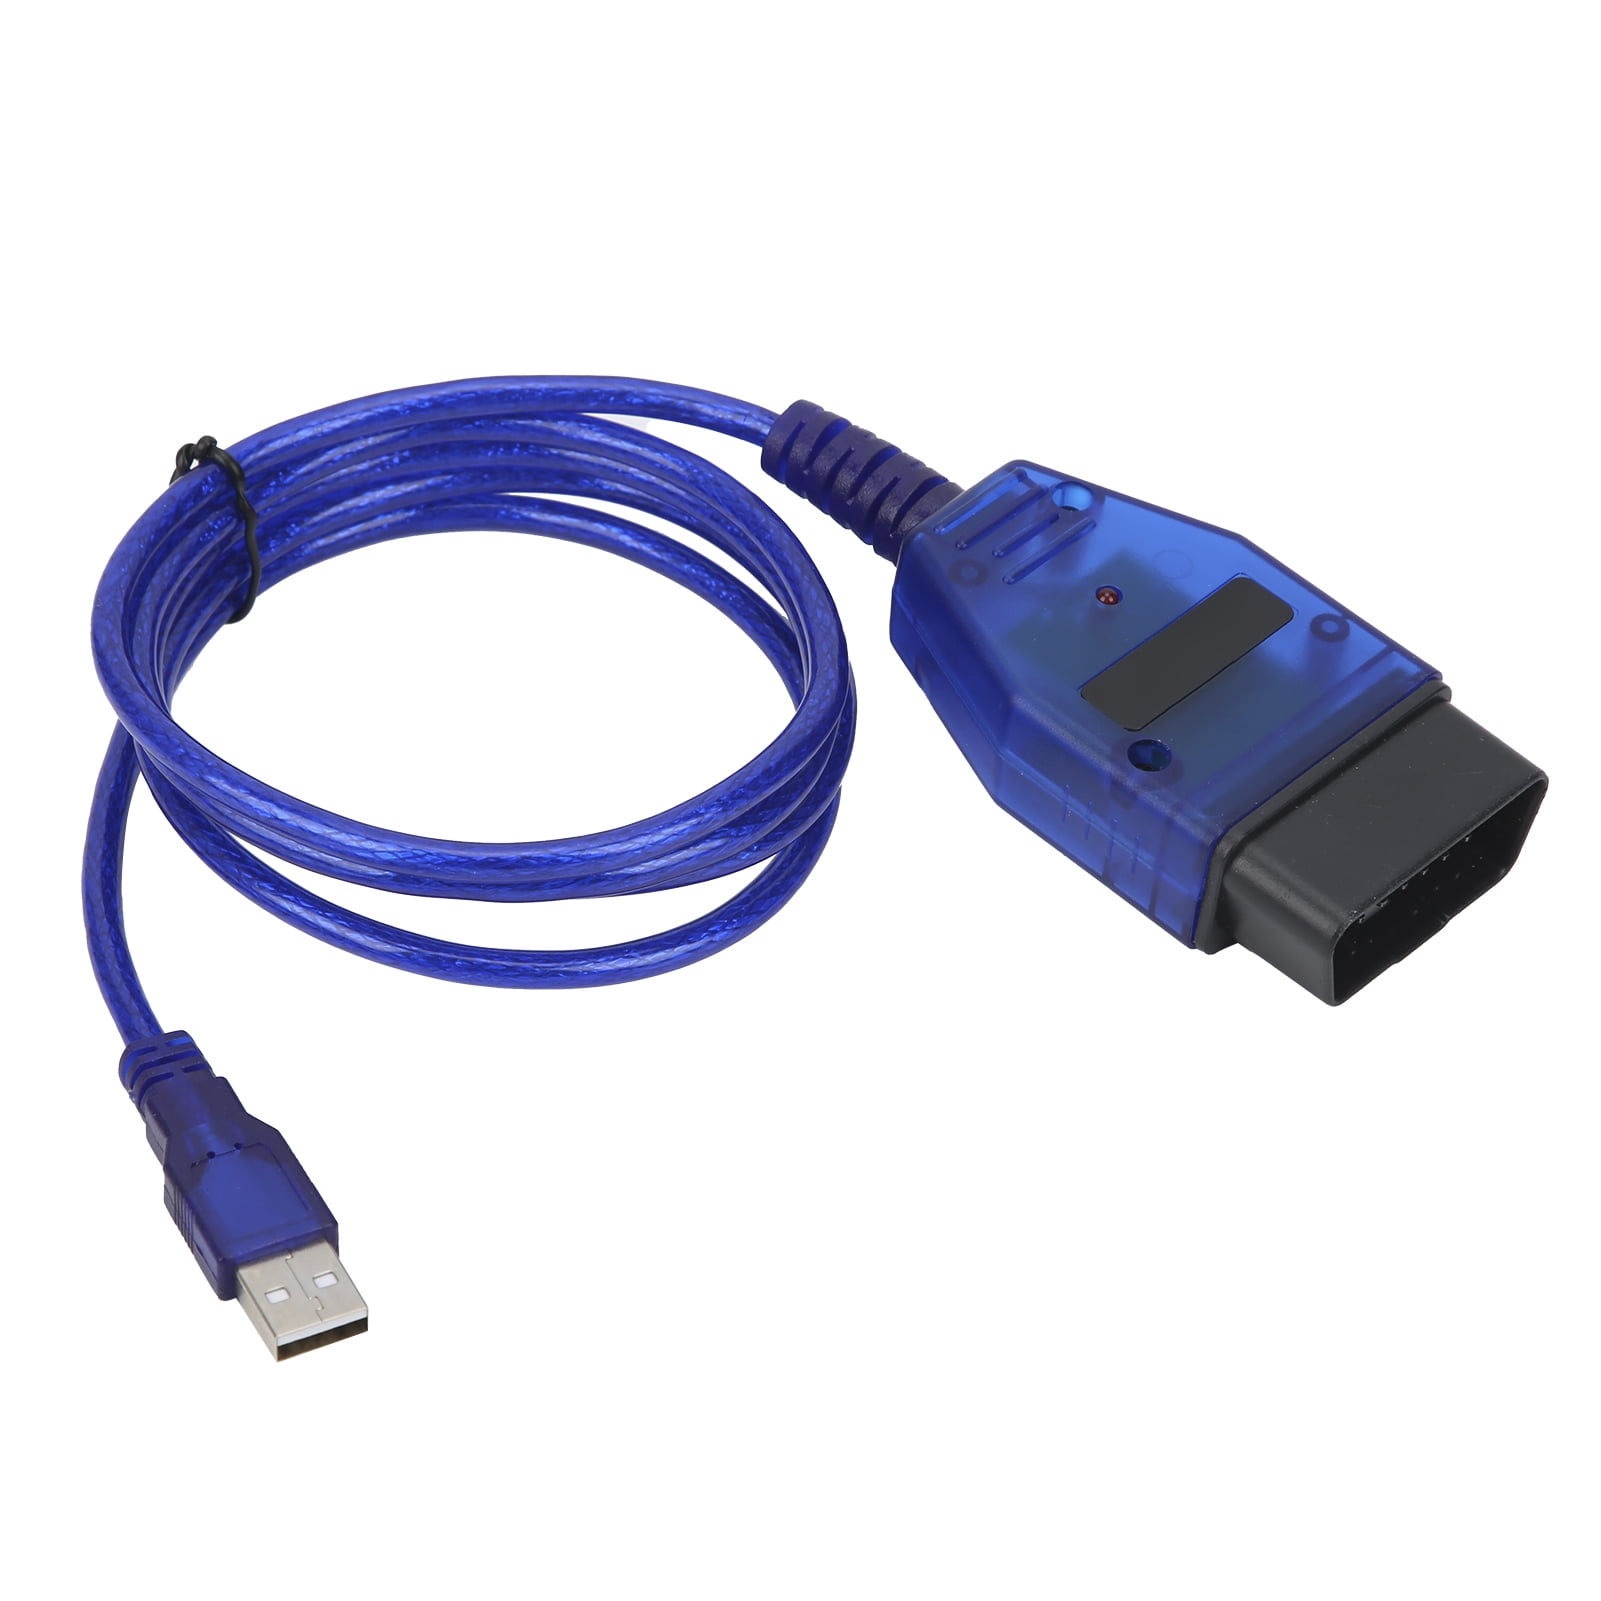 DOACT Professional OBD2 USB Diagnostic Scan Tool Fit For - Walmart.com